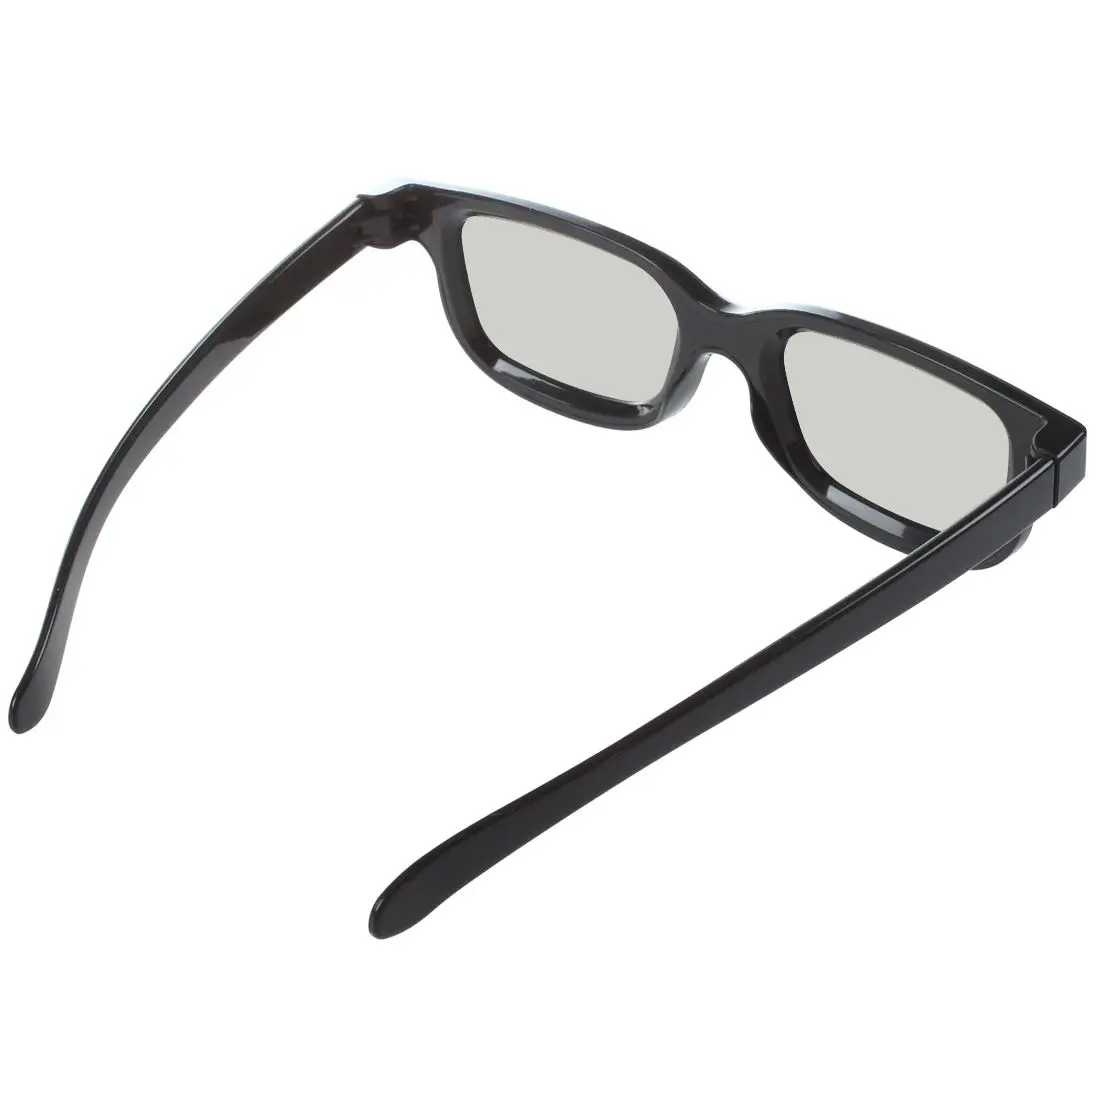 Лучшие предложения 3D очки для LG cinema 3D tv-2 пары